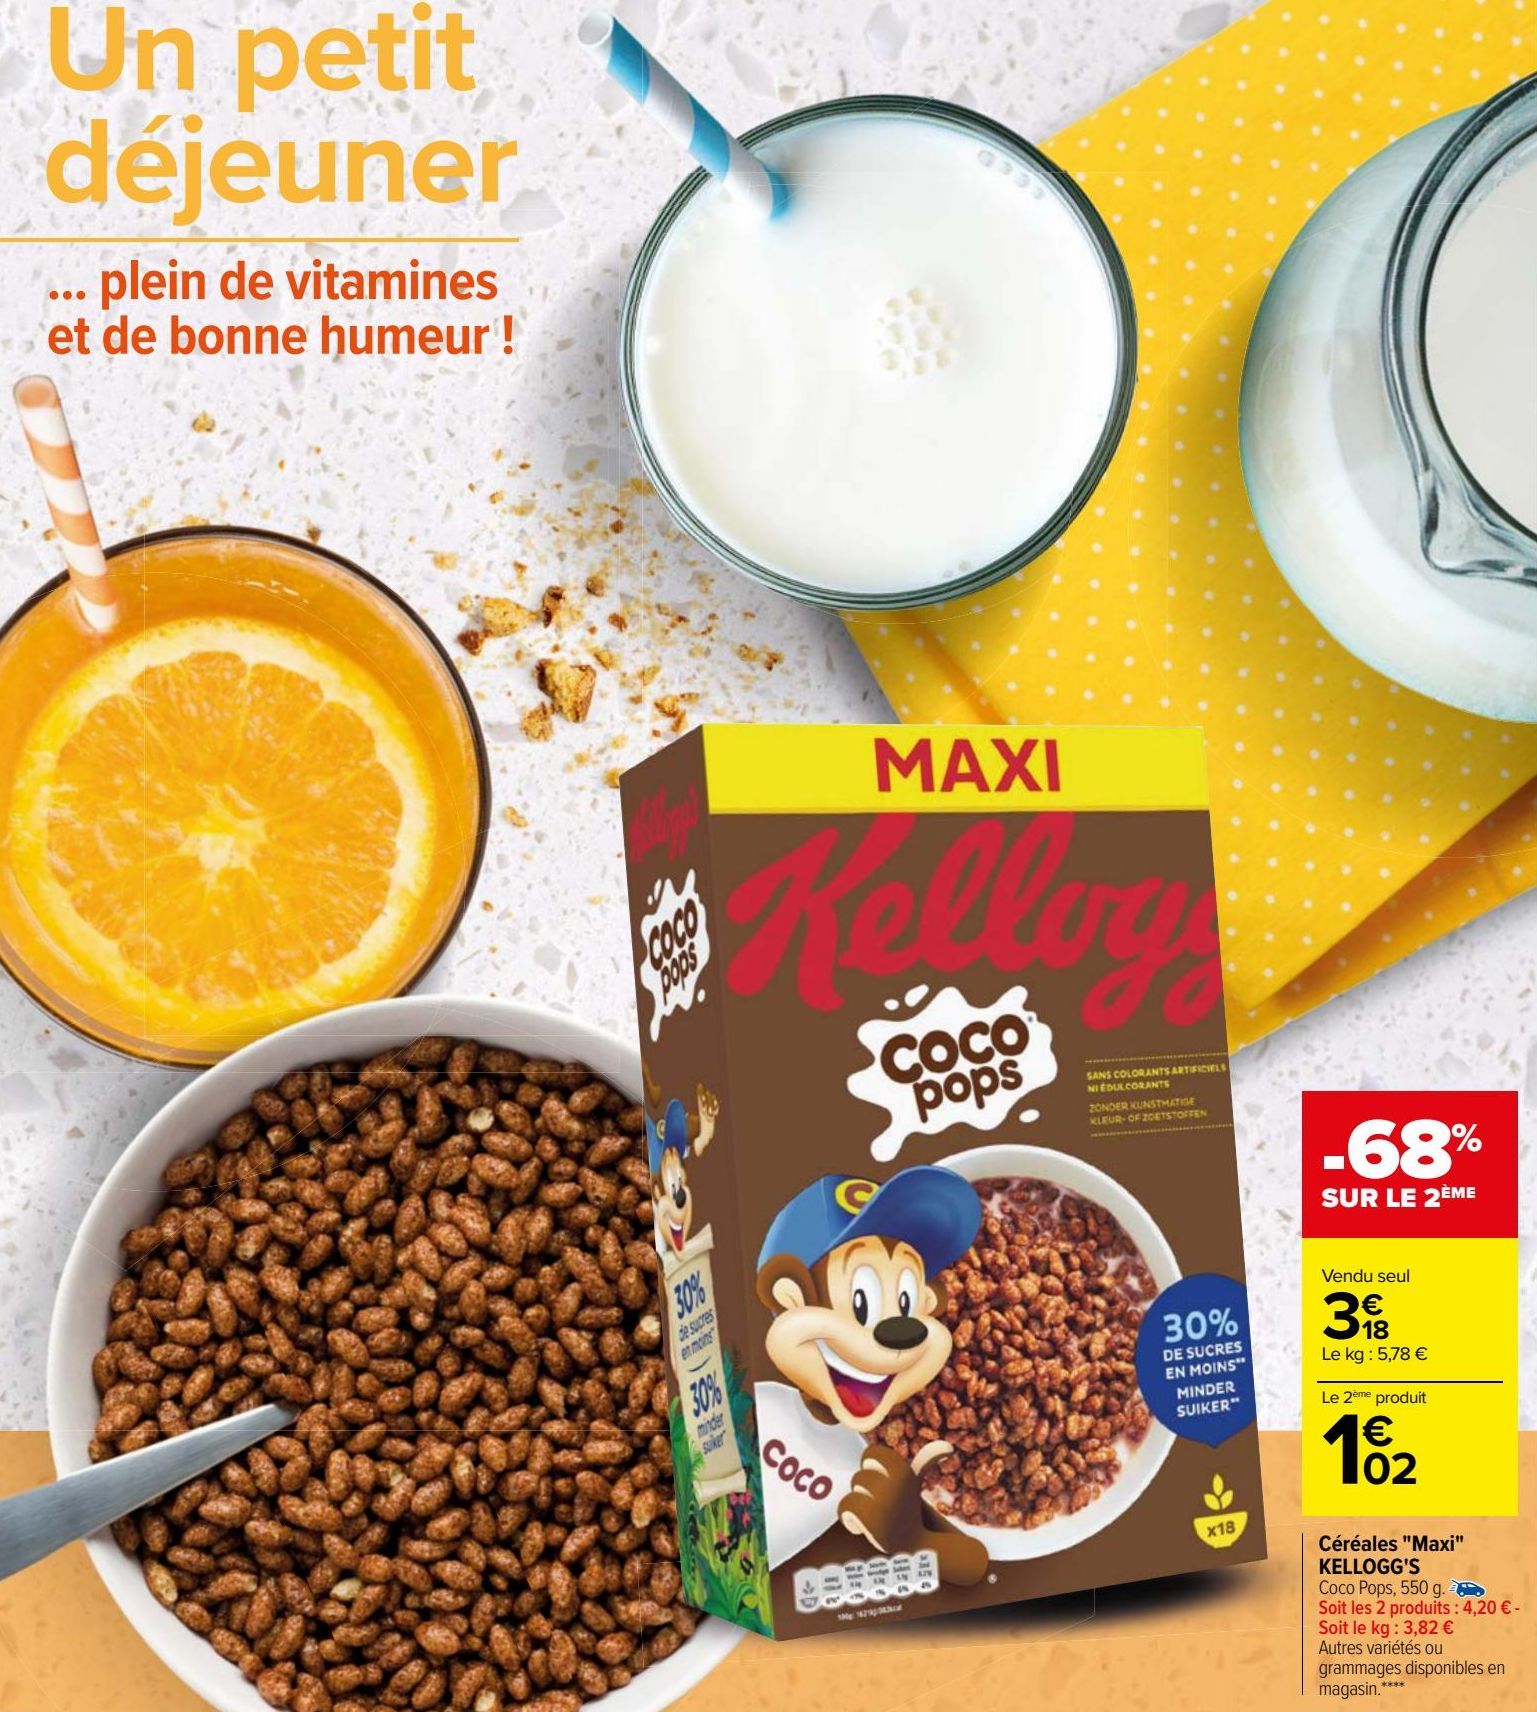 Céréales "Maxi" KELLOGG'S